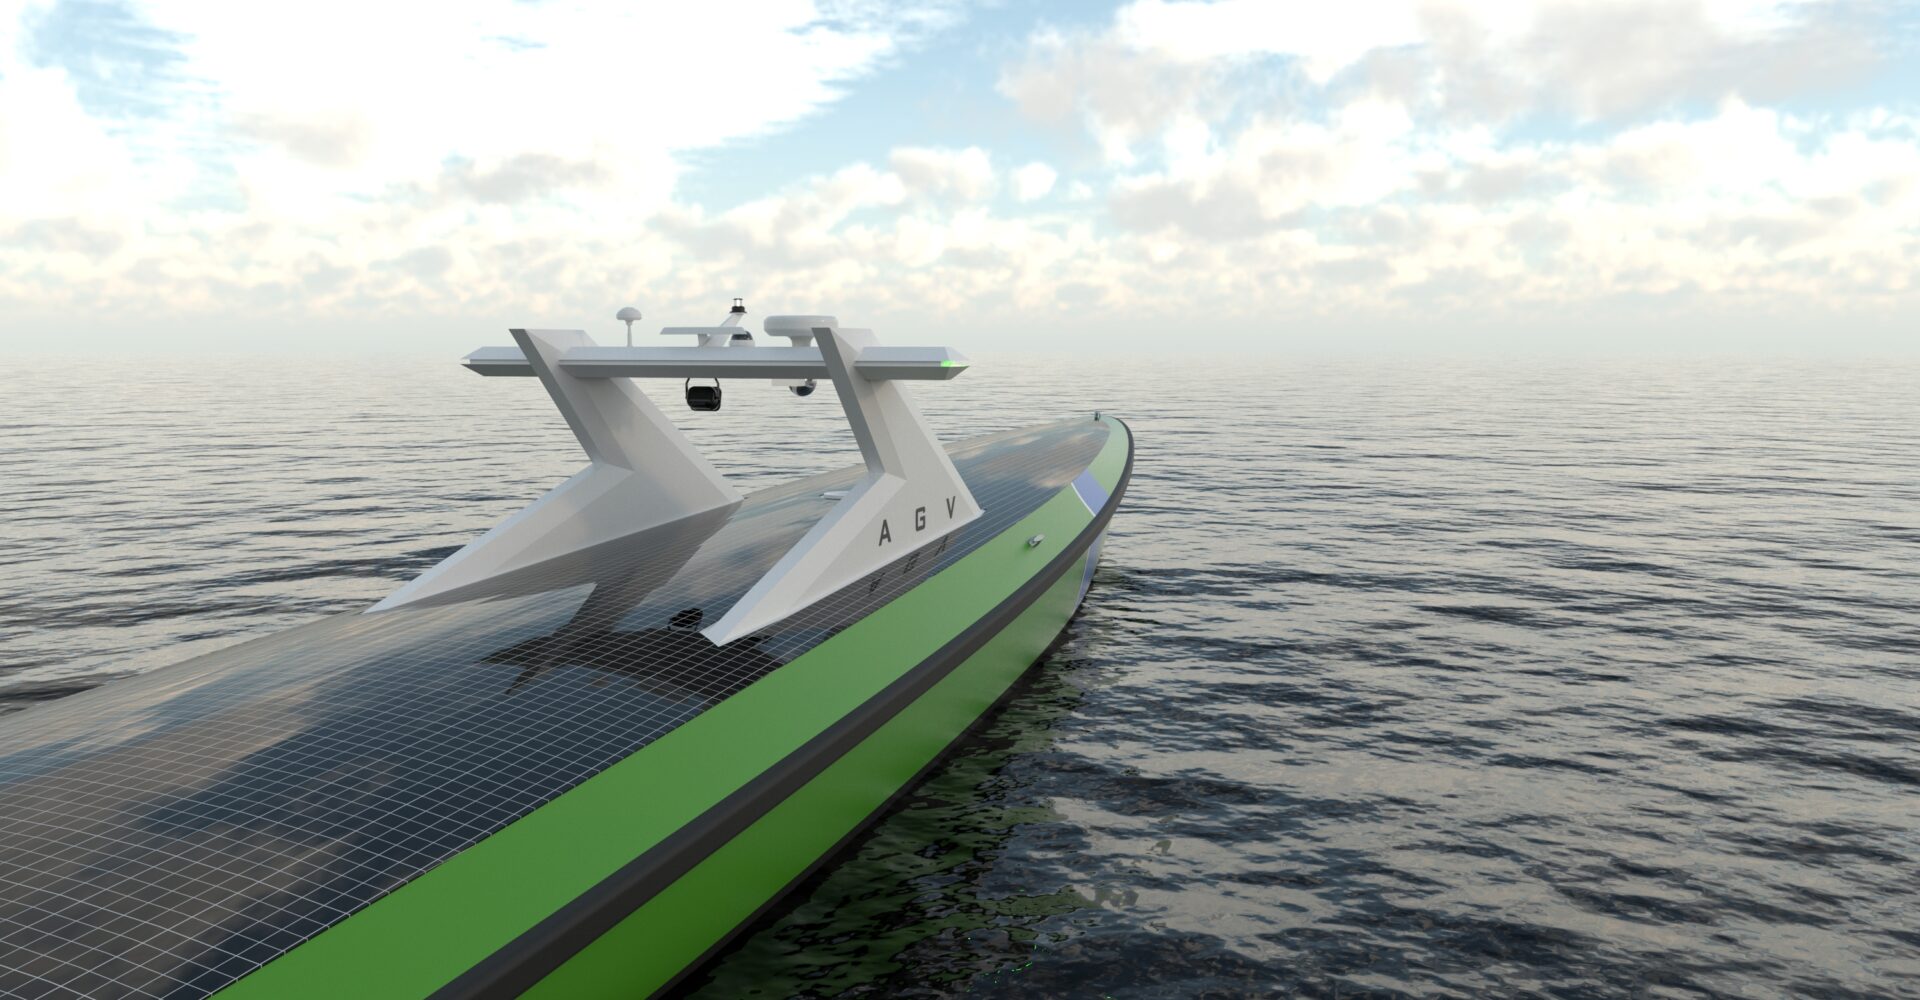 Autonomous guard vessel looks out at sea